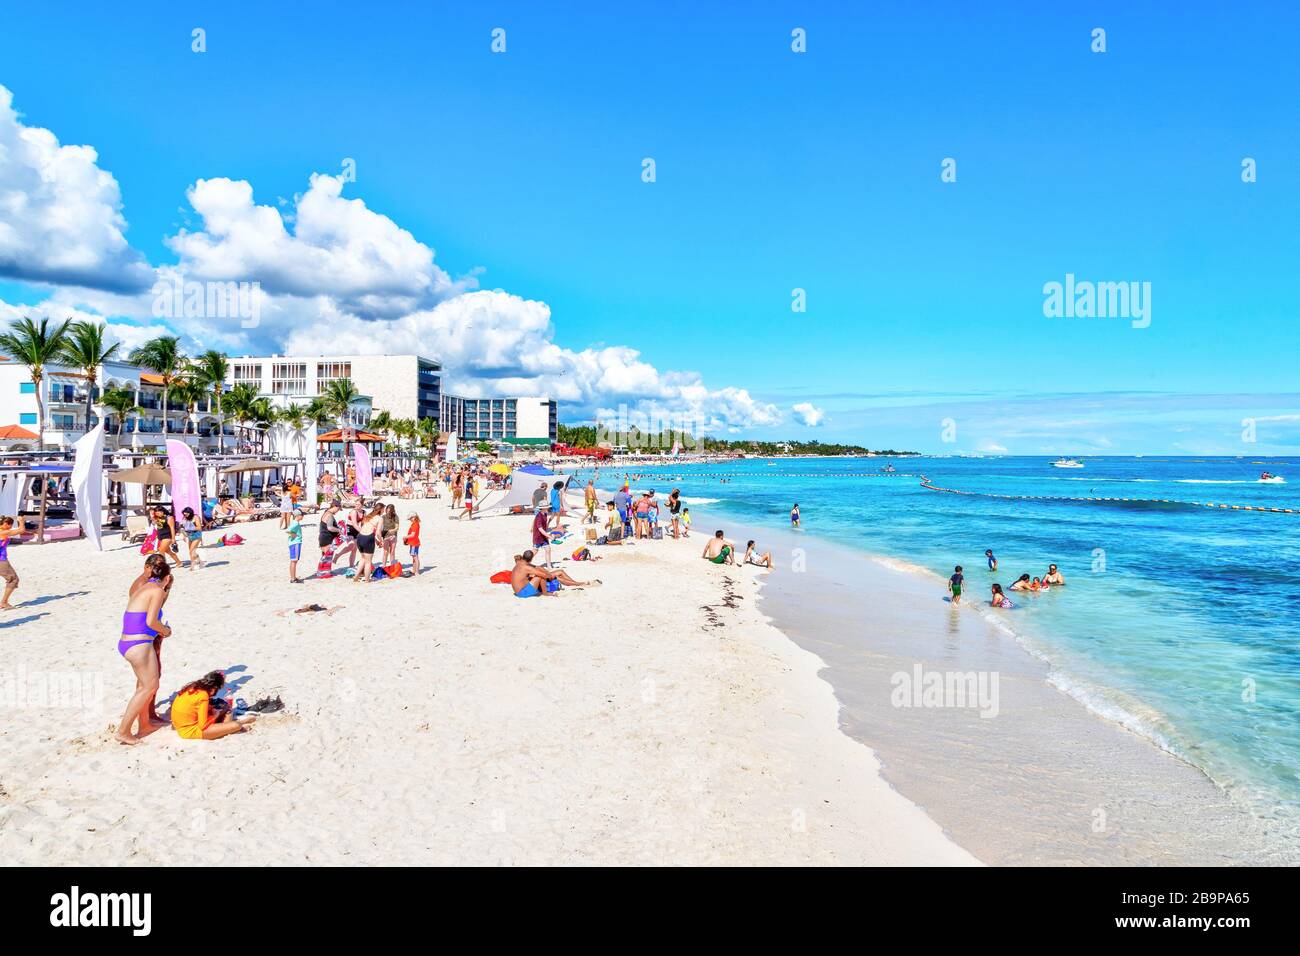 Playa del Carmen, Mexique - 26 décembre 2019: Plage bondée remplie de personnes jouant et bronzer à Playa del Carmen sur la Riviera Maya sur les Caraïbes Banque D'Images